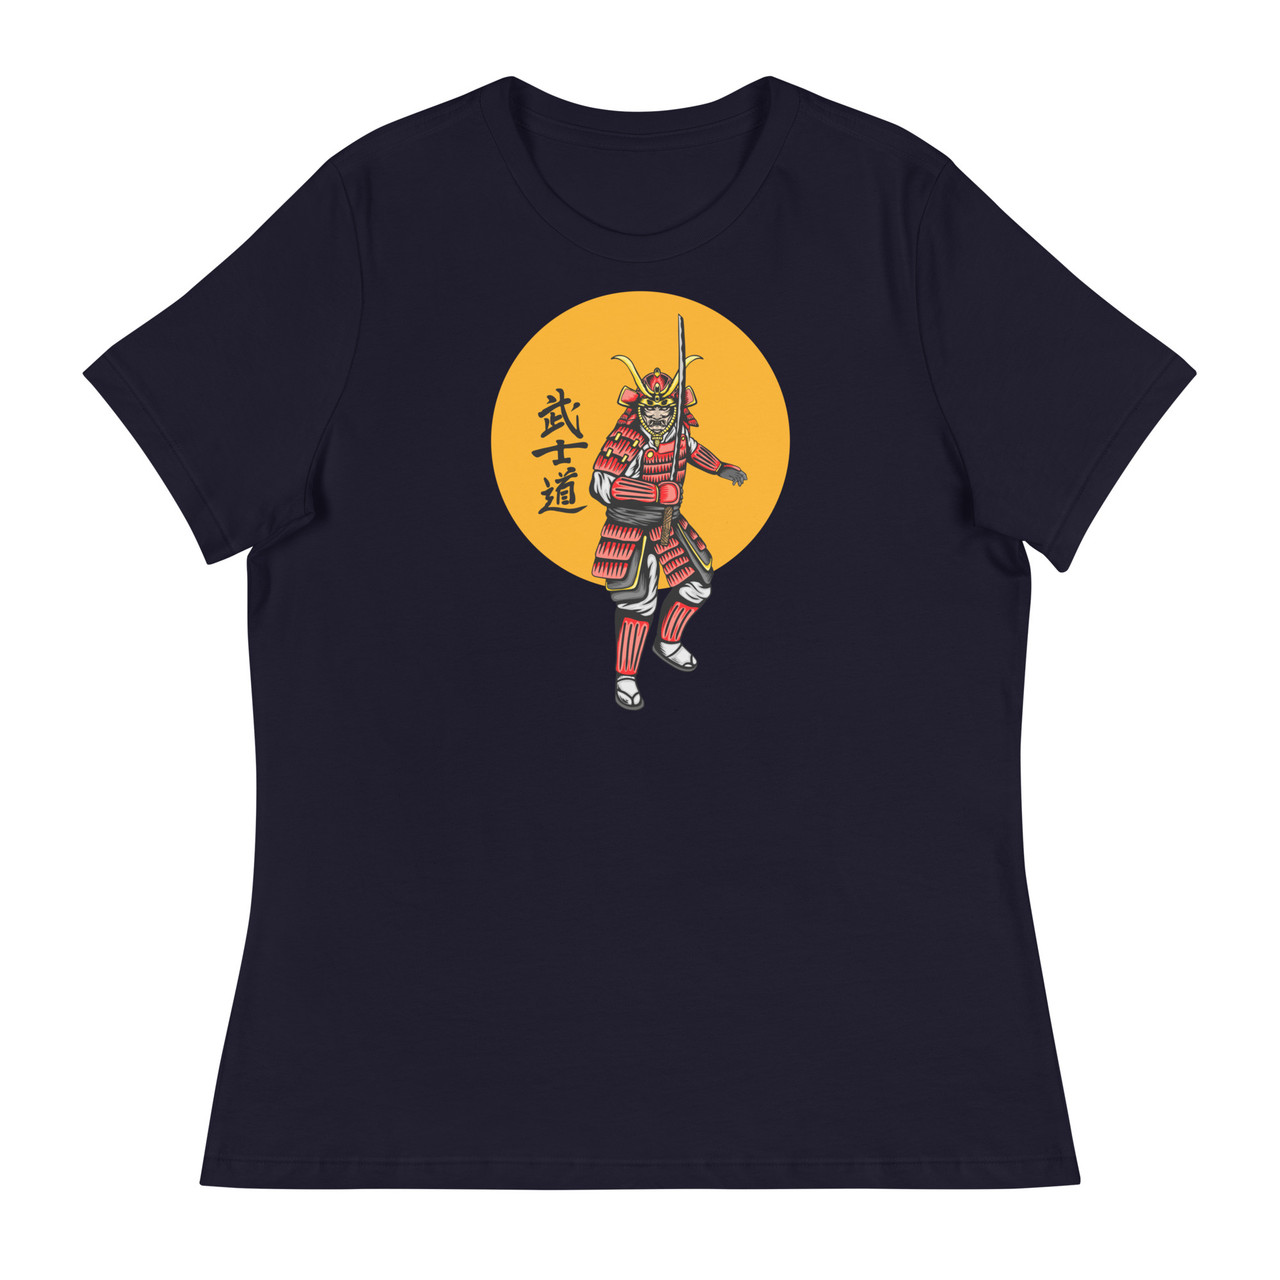 Samurai 3 Women's Relaxed T-Shirt - Bella + Canvas 6400 